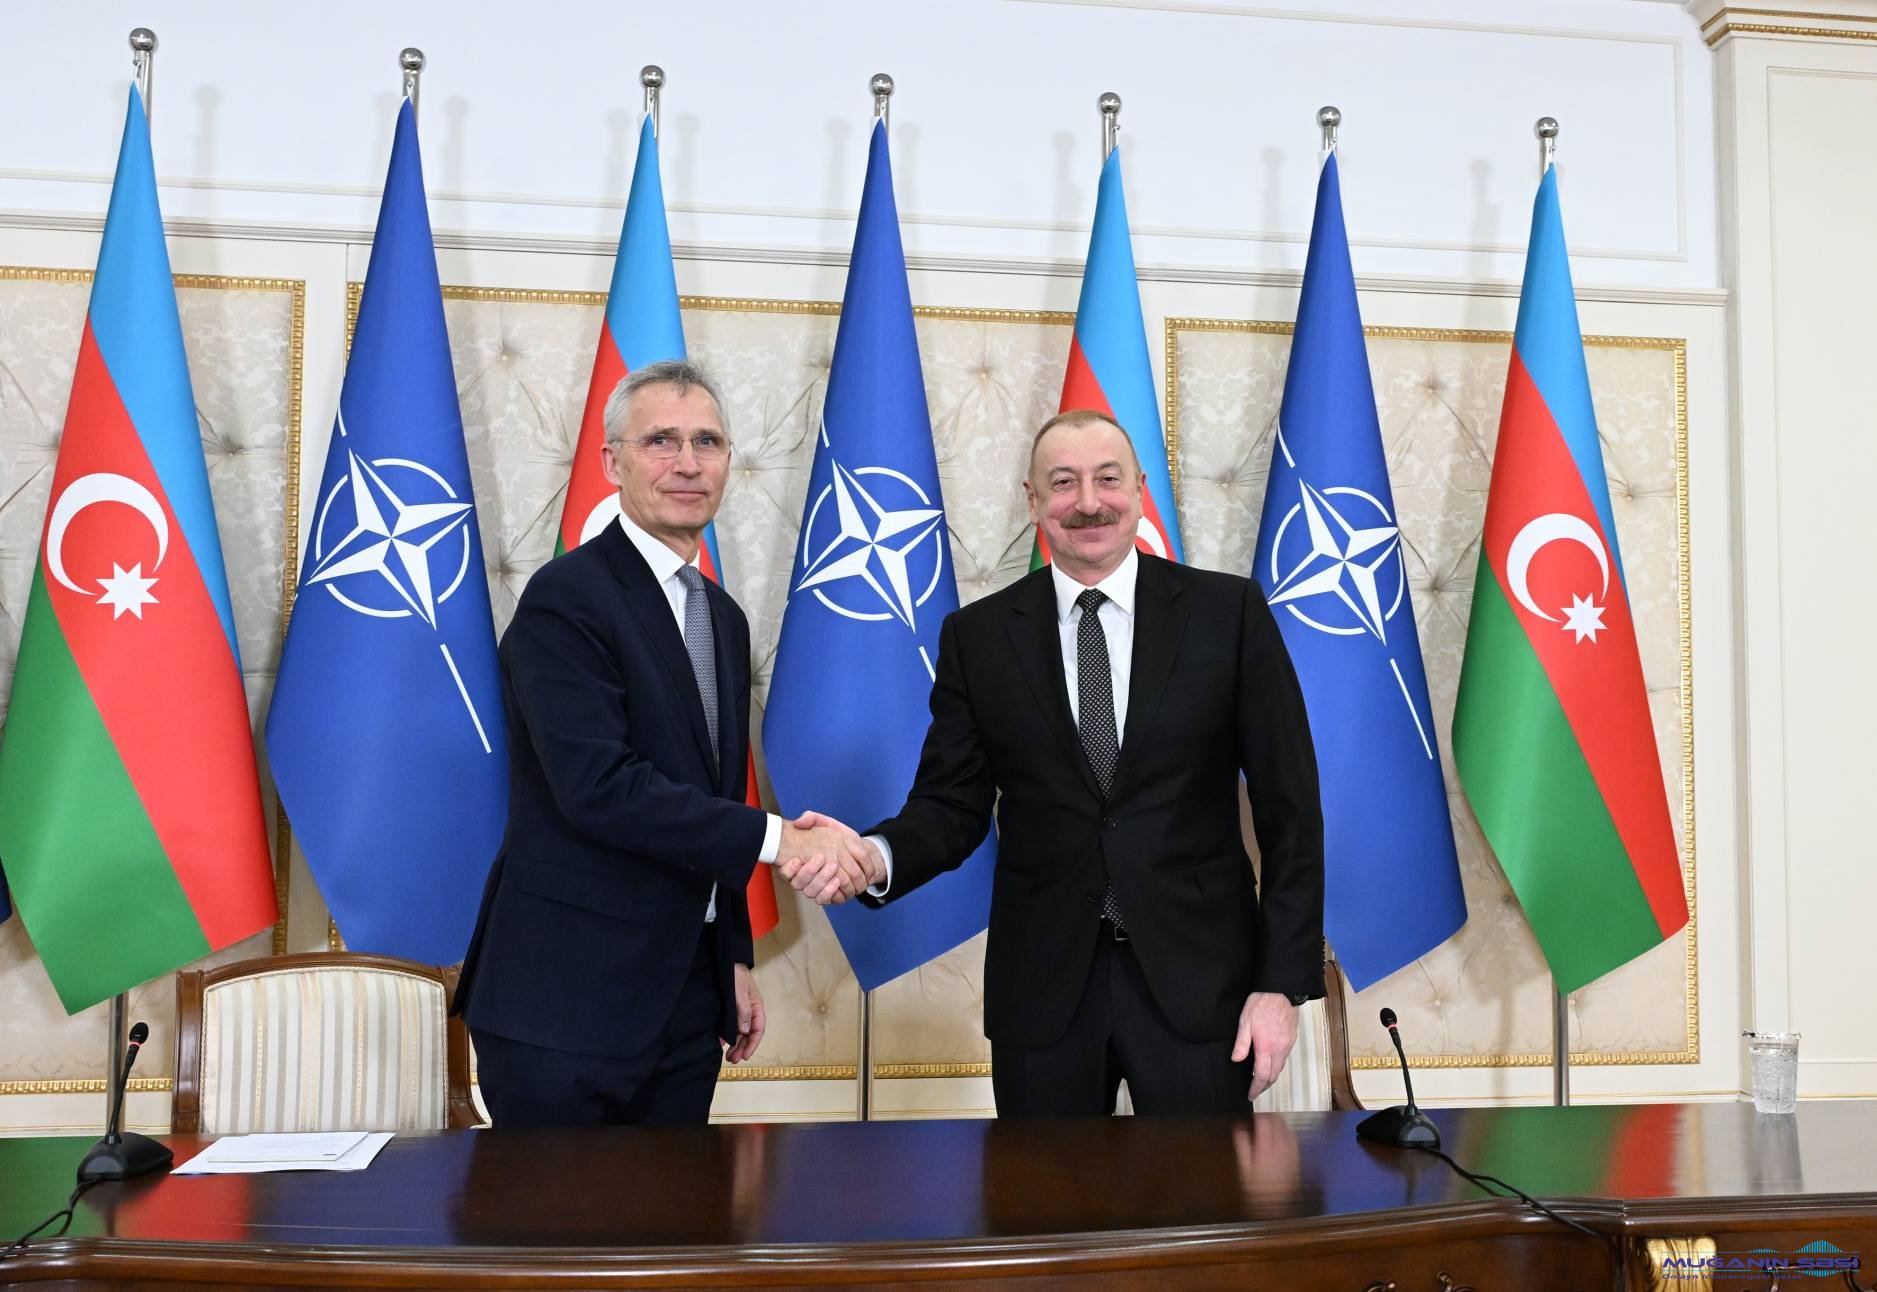 Azərbaycan NATO ilə əməkdaşlıq alətlərindən səmərəli şəkildə istifadə edir